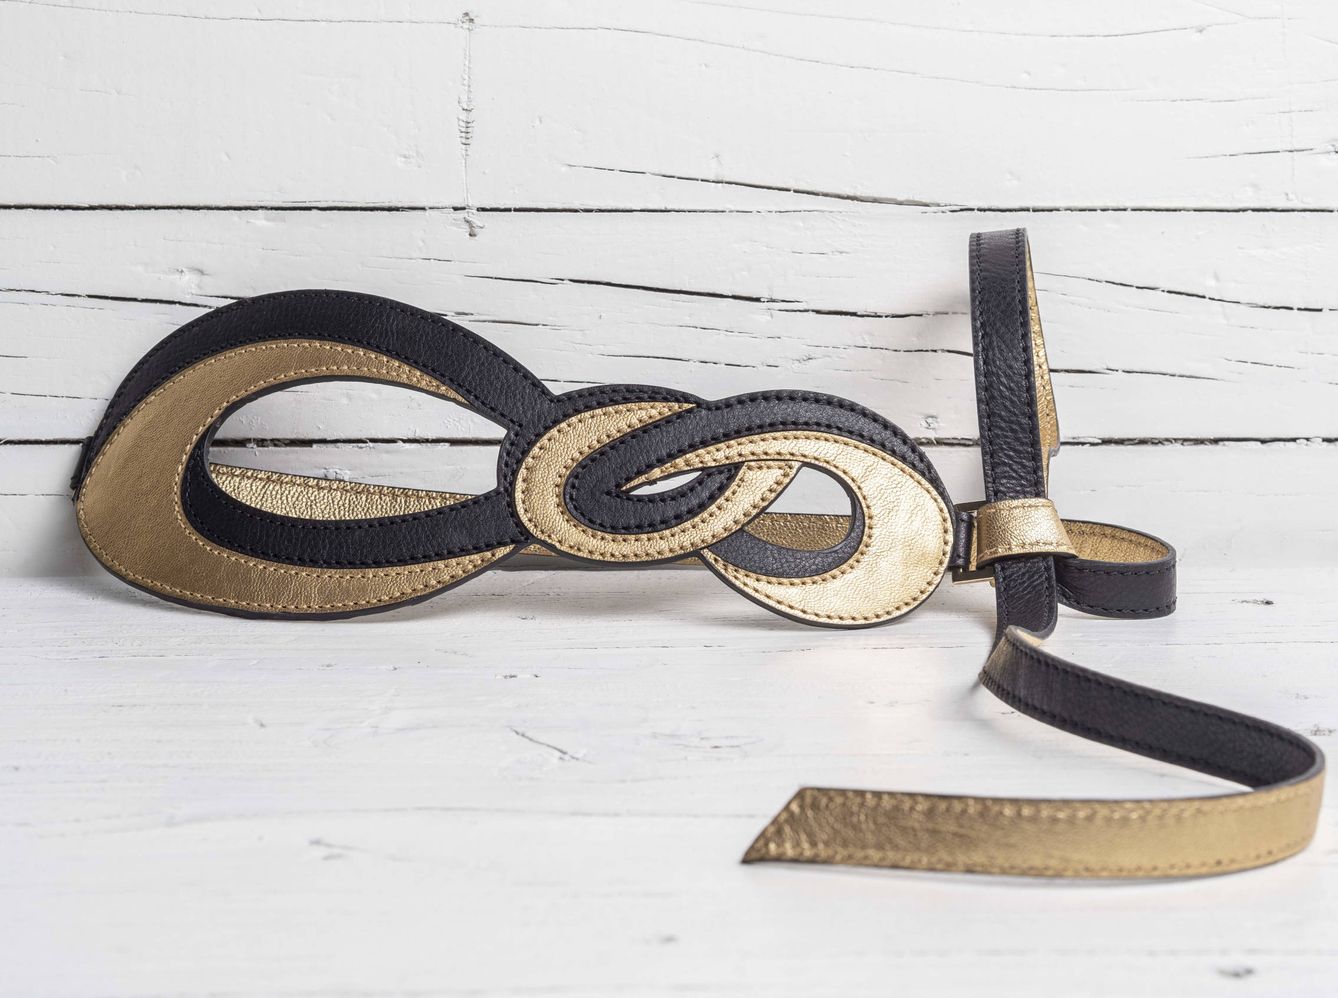 Cinturón 'Infinity Gold' en piel de becerro negro y oro, un valor seguro para rematar cualquier look.